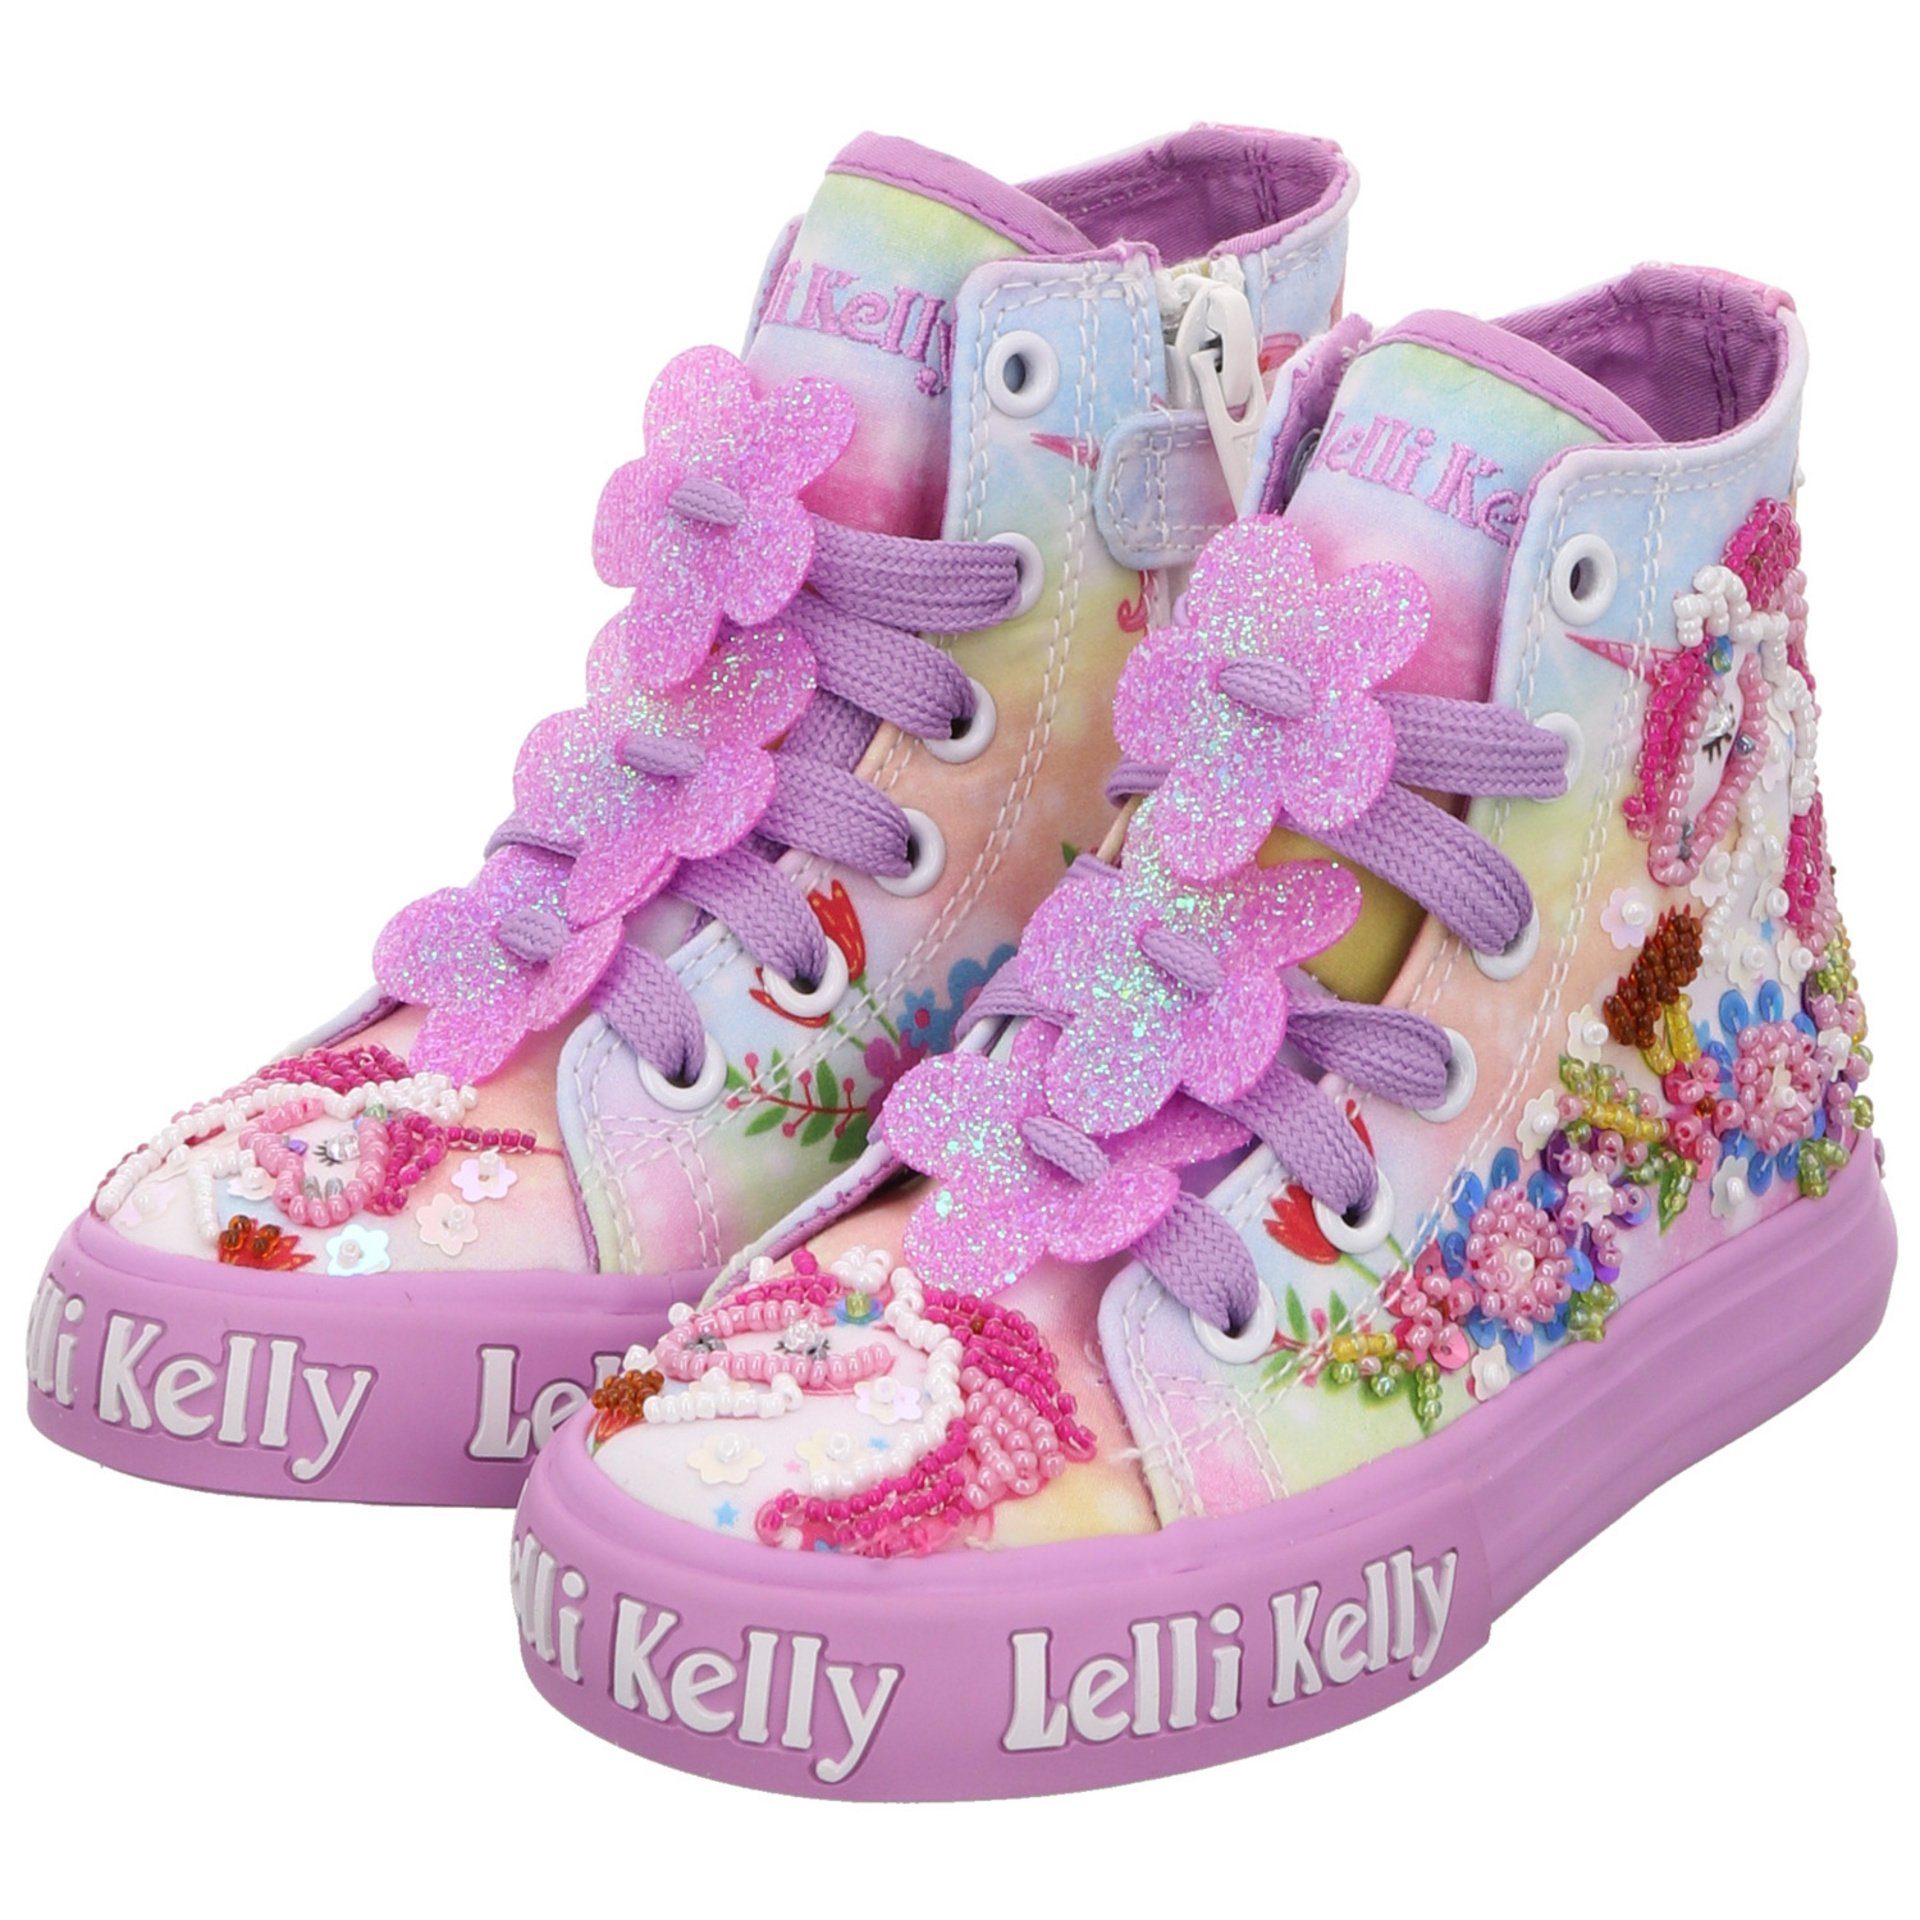 Lelli Kelly Mädchen Sneaker rot+lila Stiefelette Unicorn Schuhe Kombi Textil Sneaker sonst